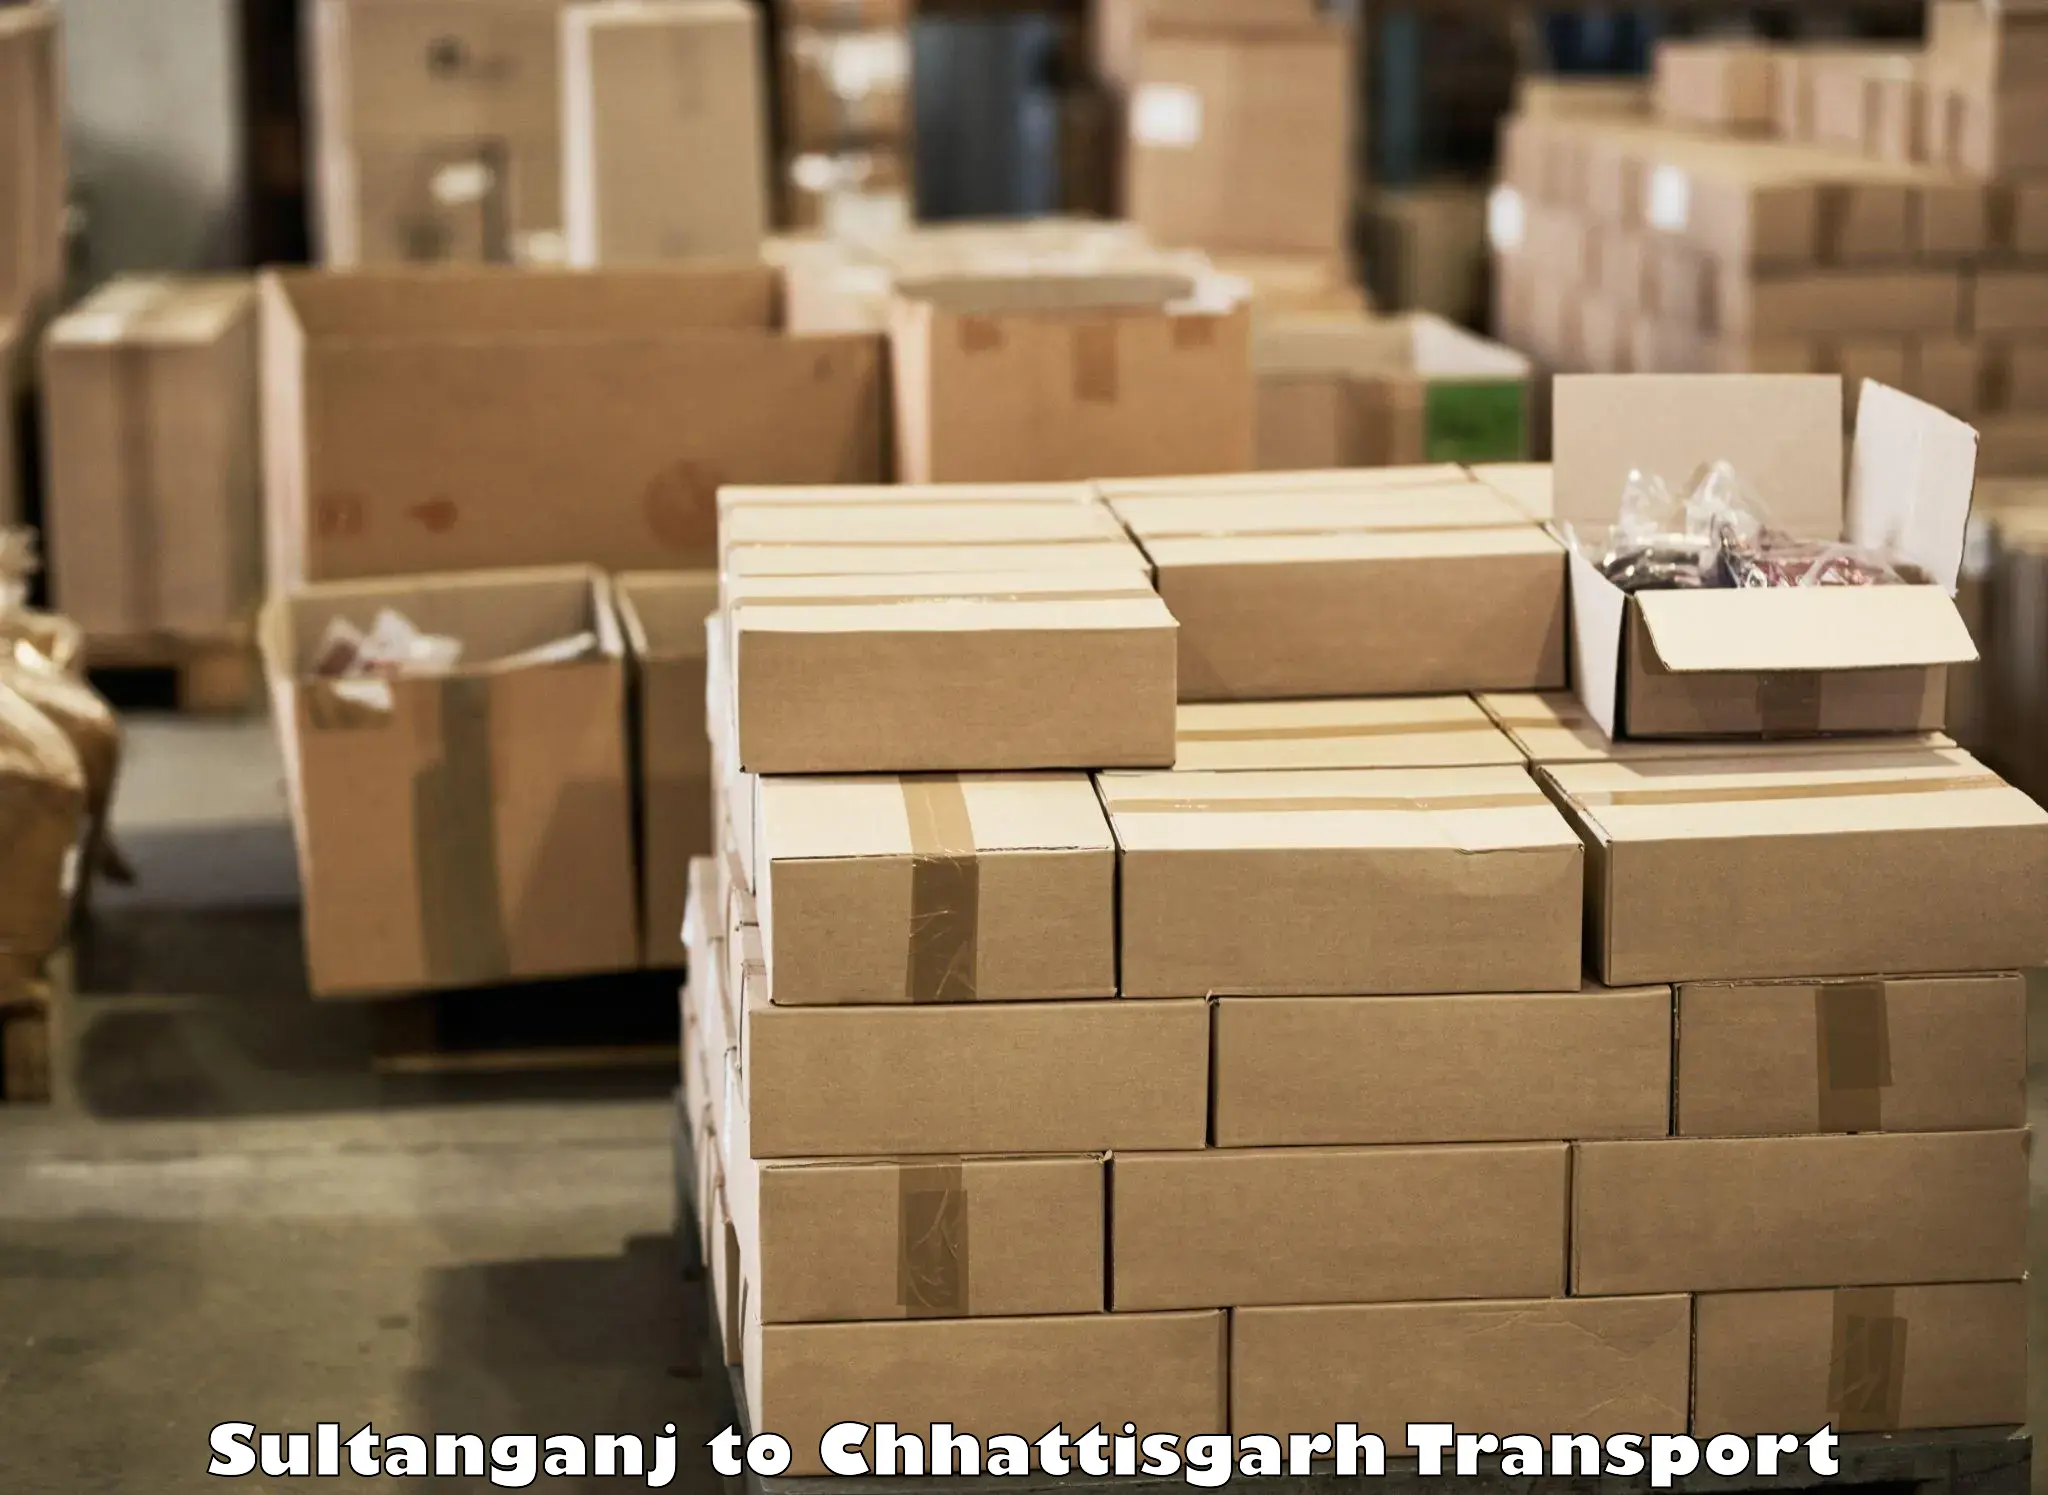 Shipping partner Sultanganj to Bhatgaon